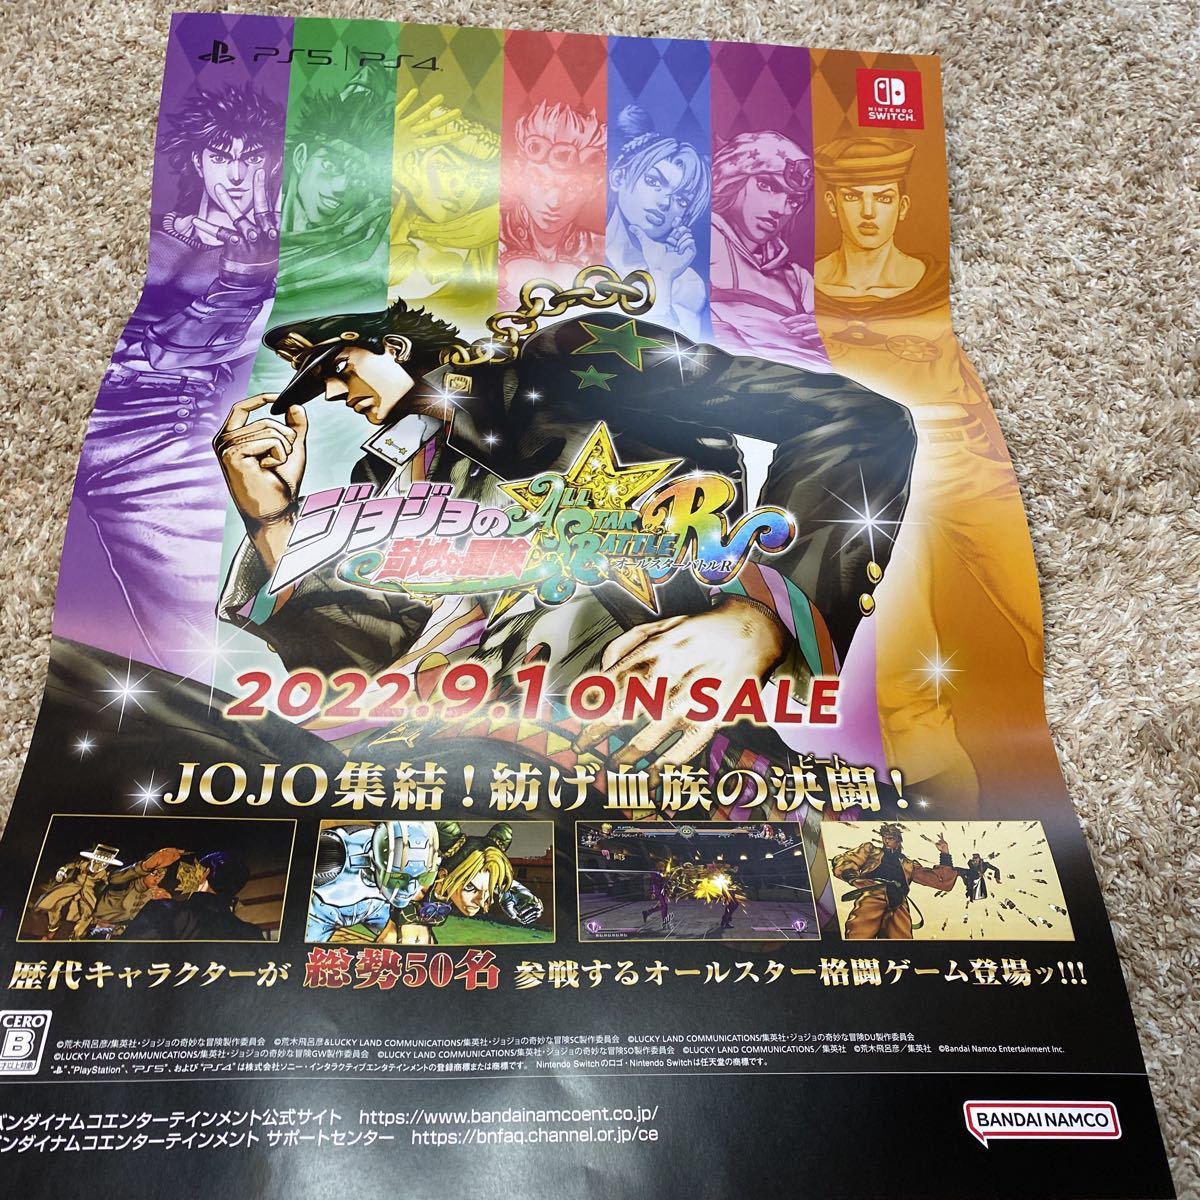 三田 ジョジョ 限定ポスター PS5版 コレクターズエディション オールスターバトルR 家庭用ゲームソフト